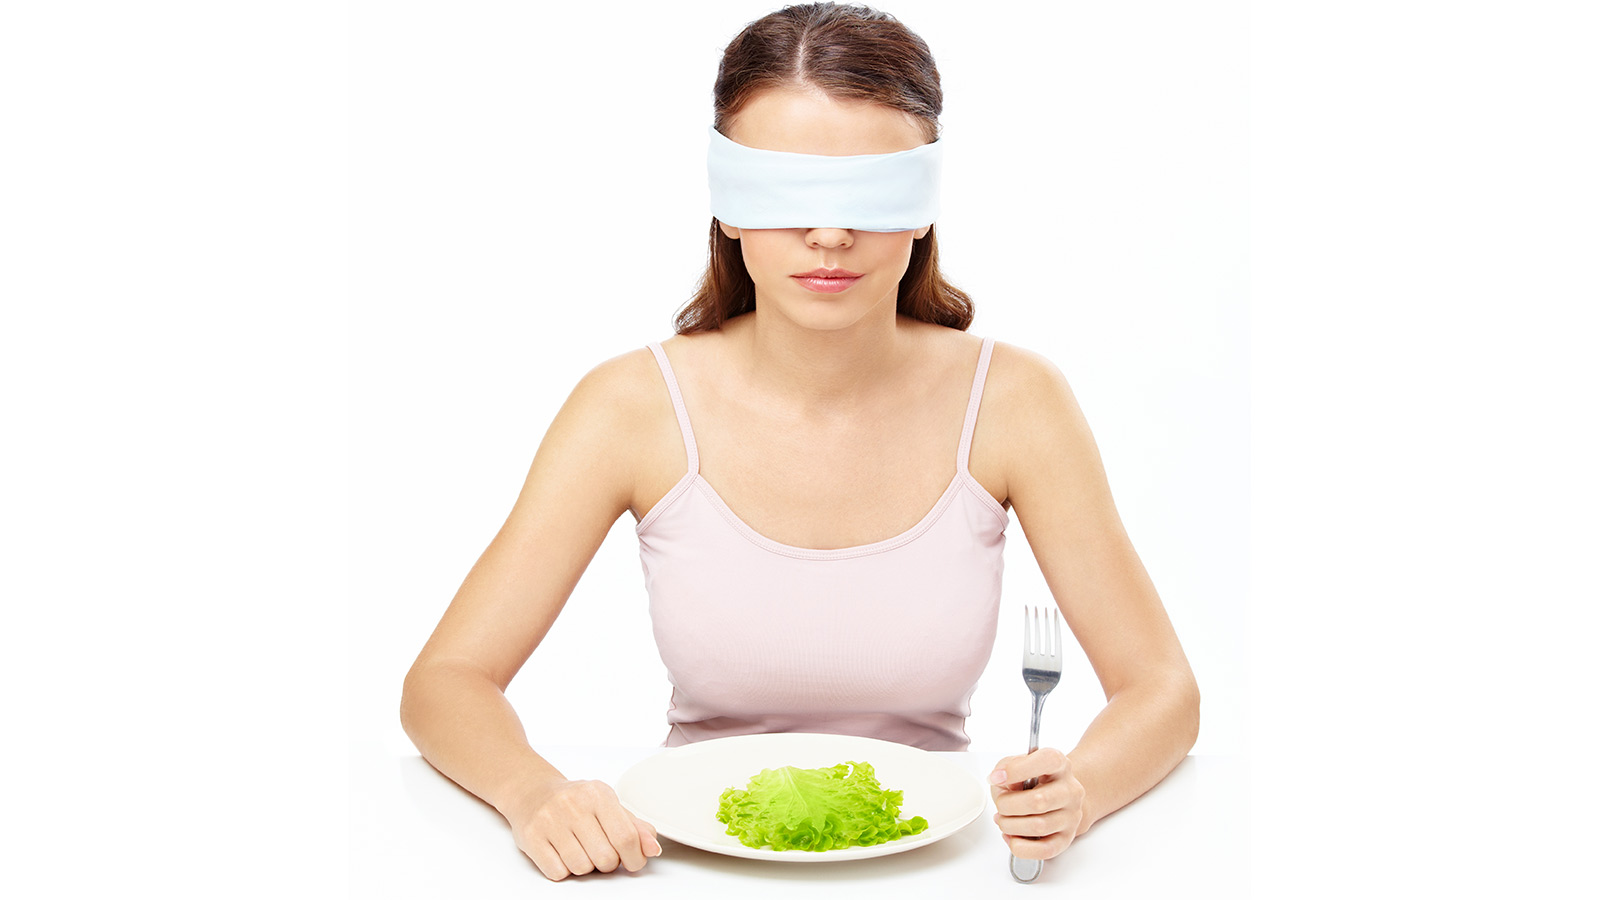 Blindfolded eater